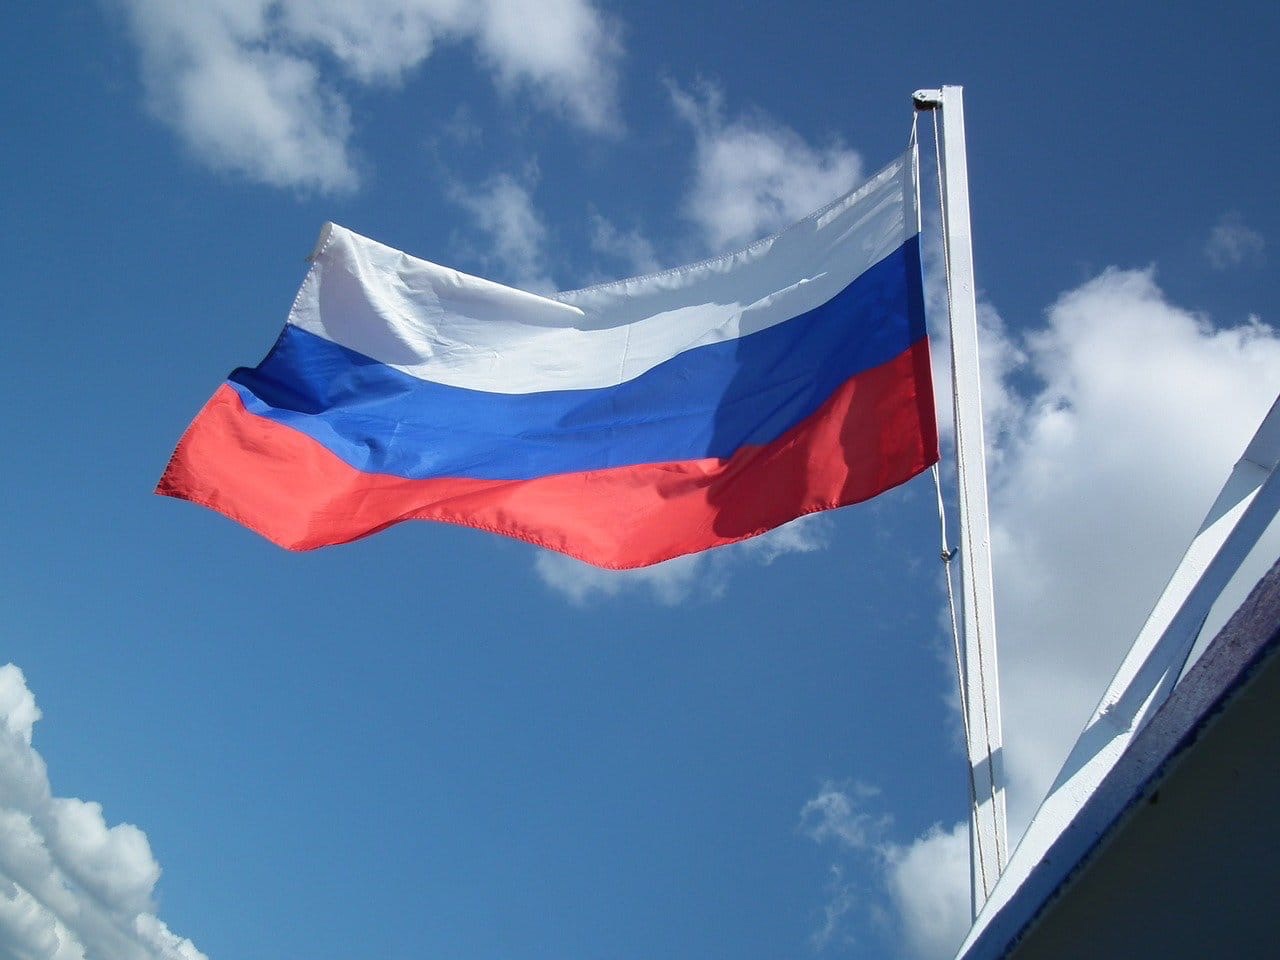 12 июня - День России 